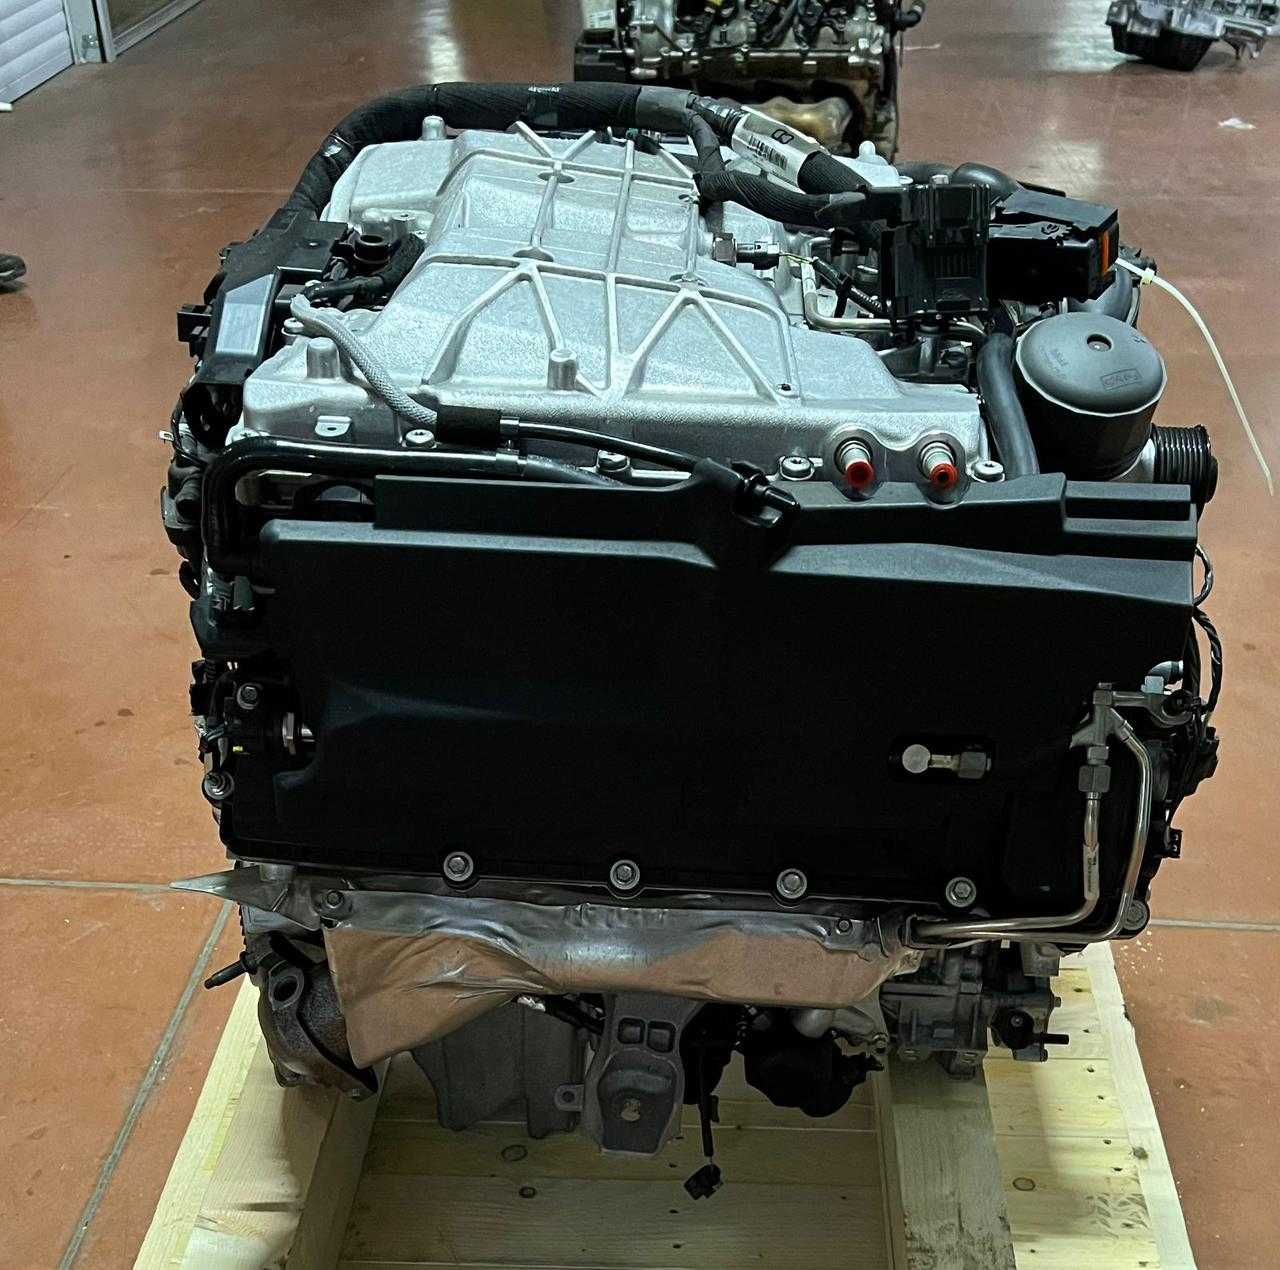 Двигатель Land Rover Ланд Ровер 5,0 л. новый матор Гарантия